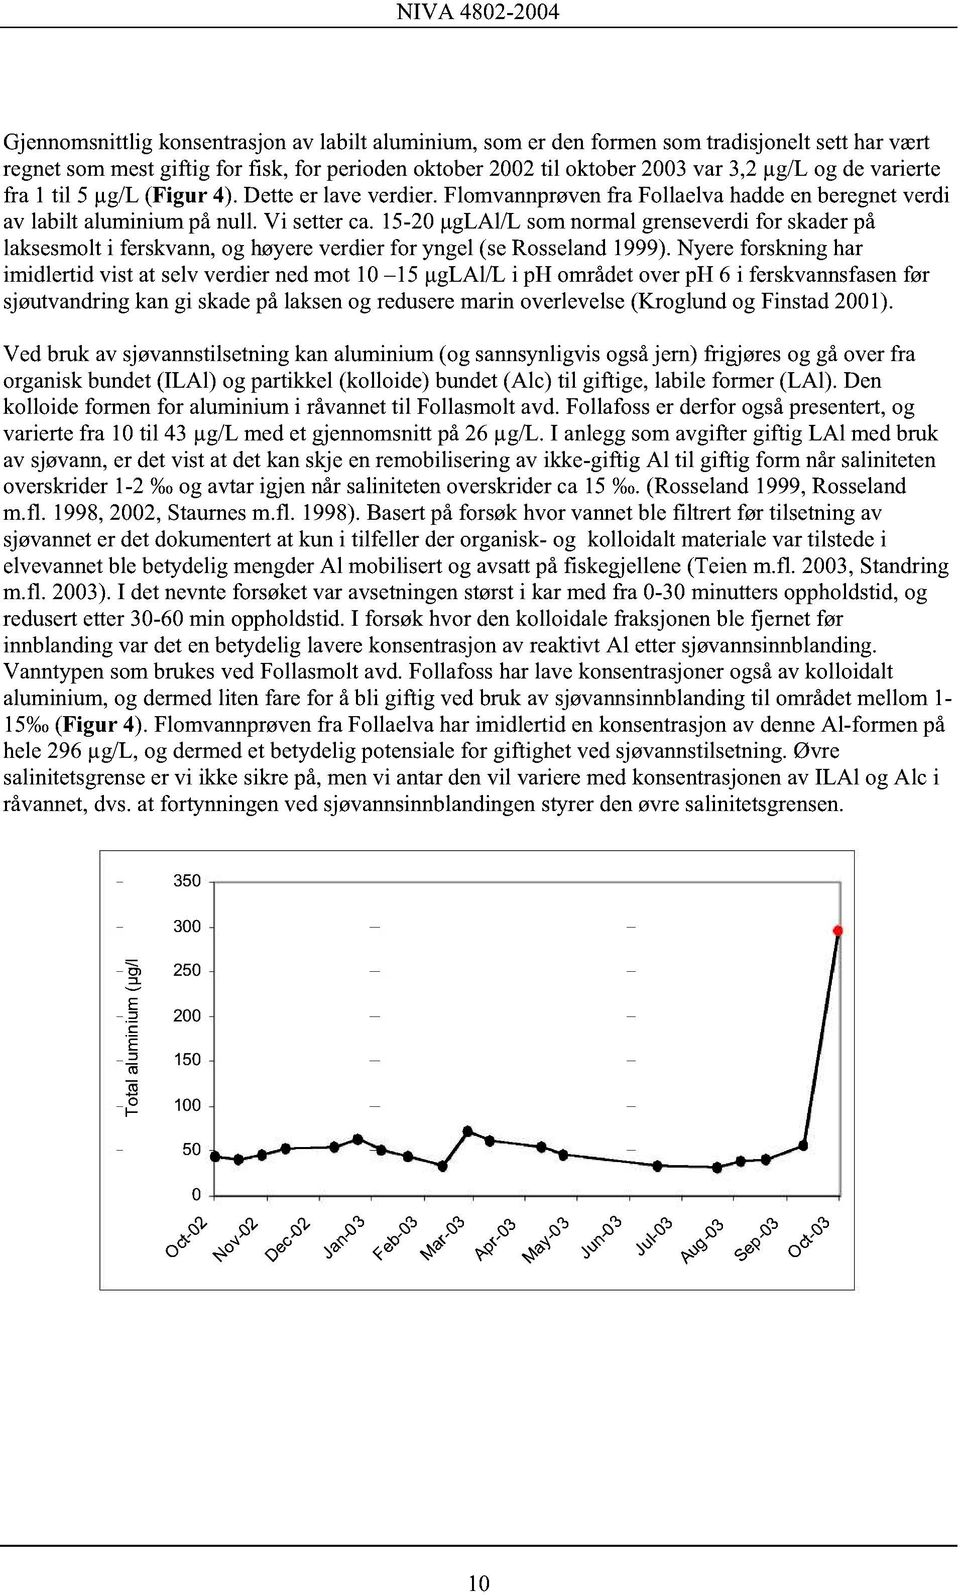 15-20 µglal/l som normal grenseverdi for skader på laksesmolt i ferskvann, og høyere verdier for yngel (se Rosseland 1999).